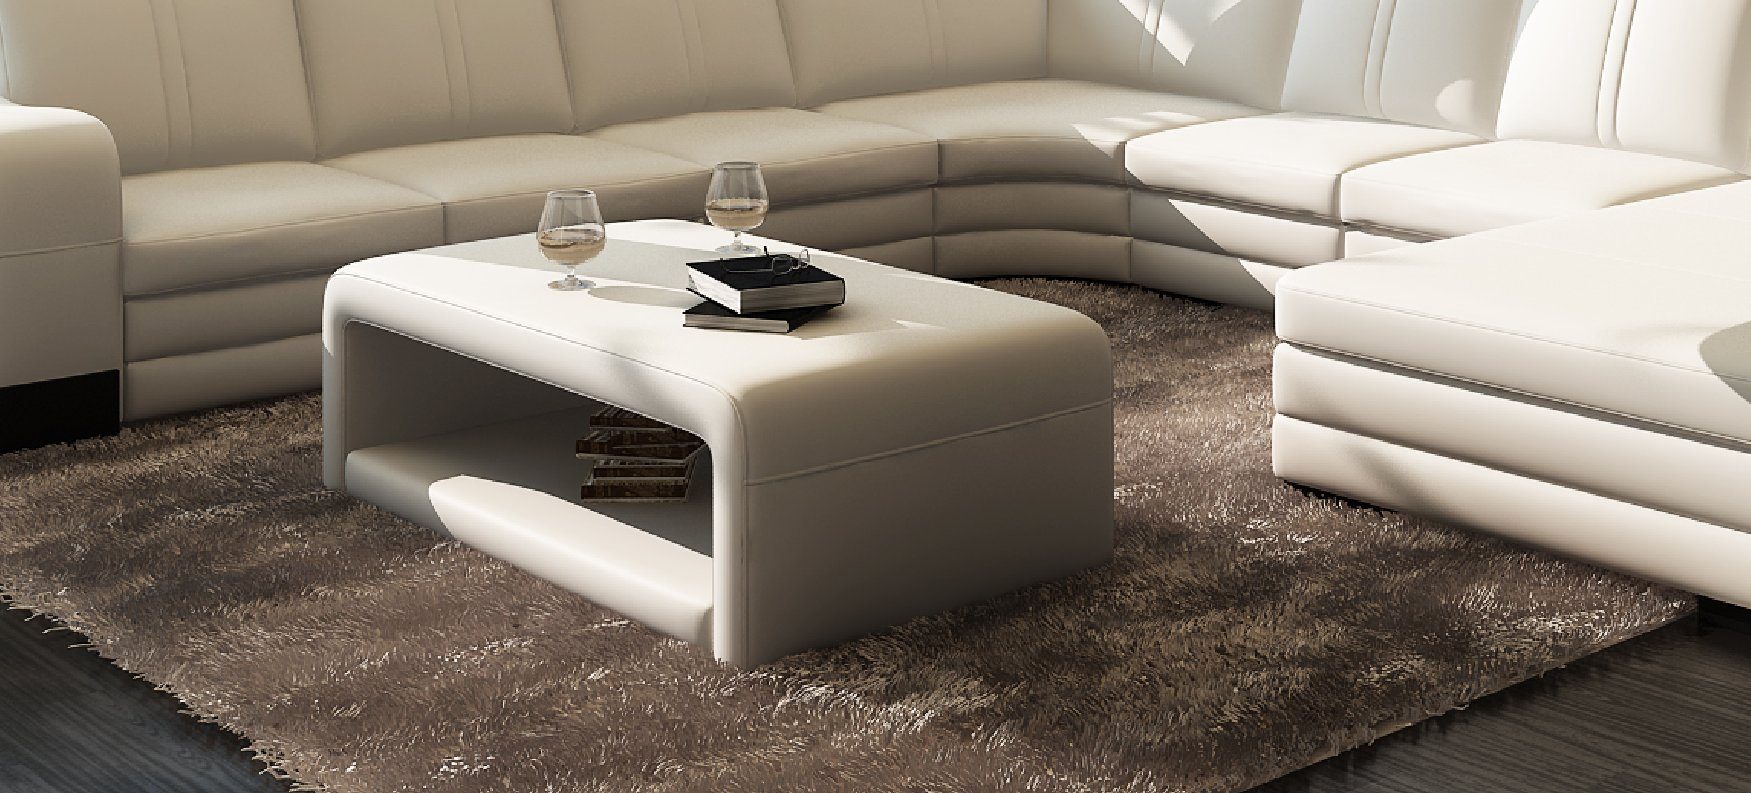 JVmoebel Couchtisch Design Modern Couch Sofa Tische Wohnzimmer Gepolstert Tisch Sofort